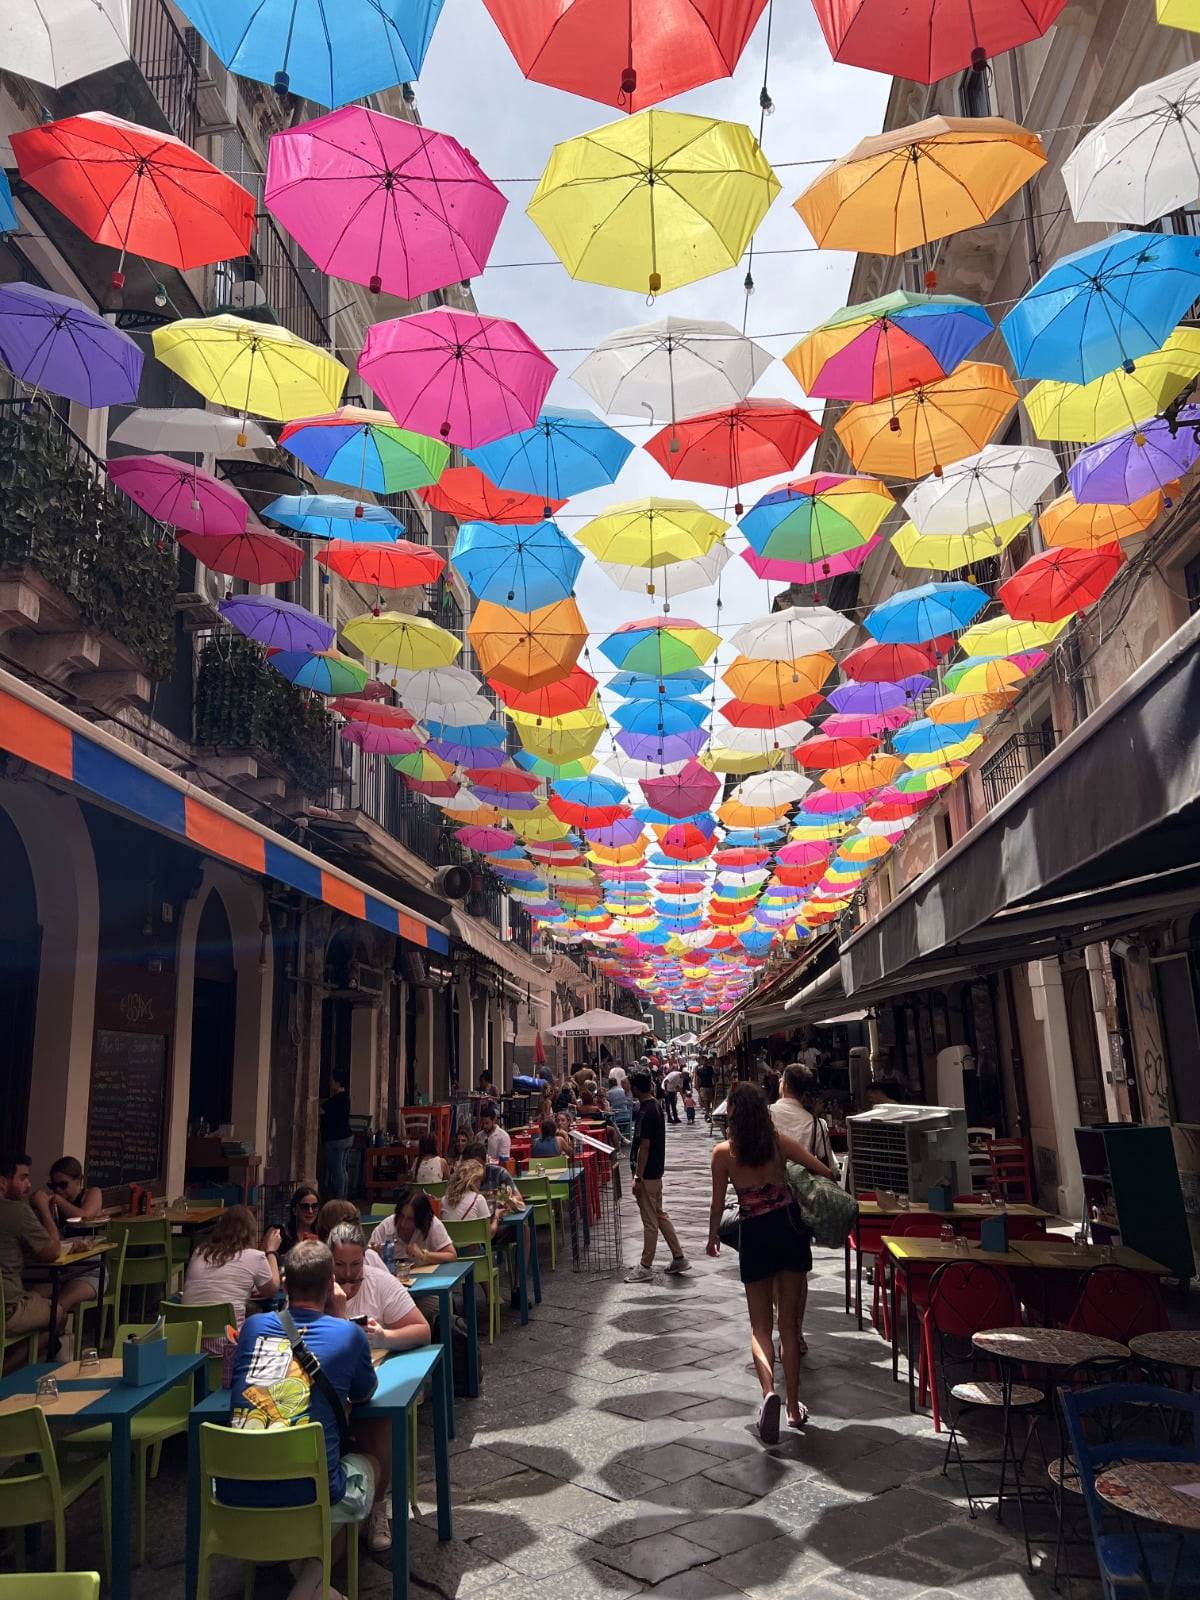 Catania street with umbrellas - via Pardo